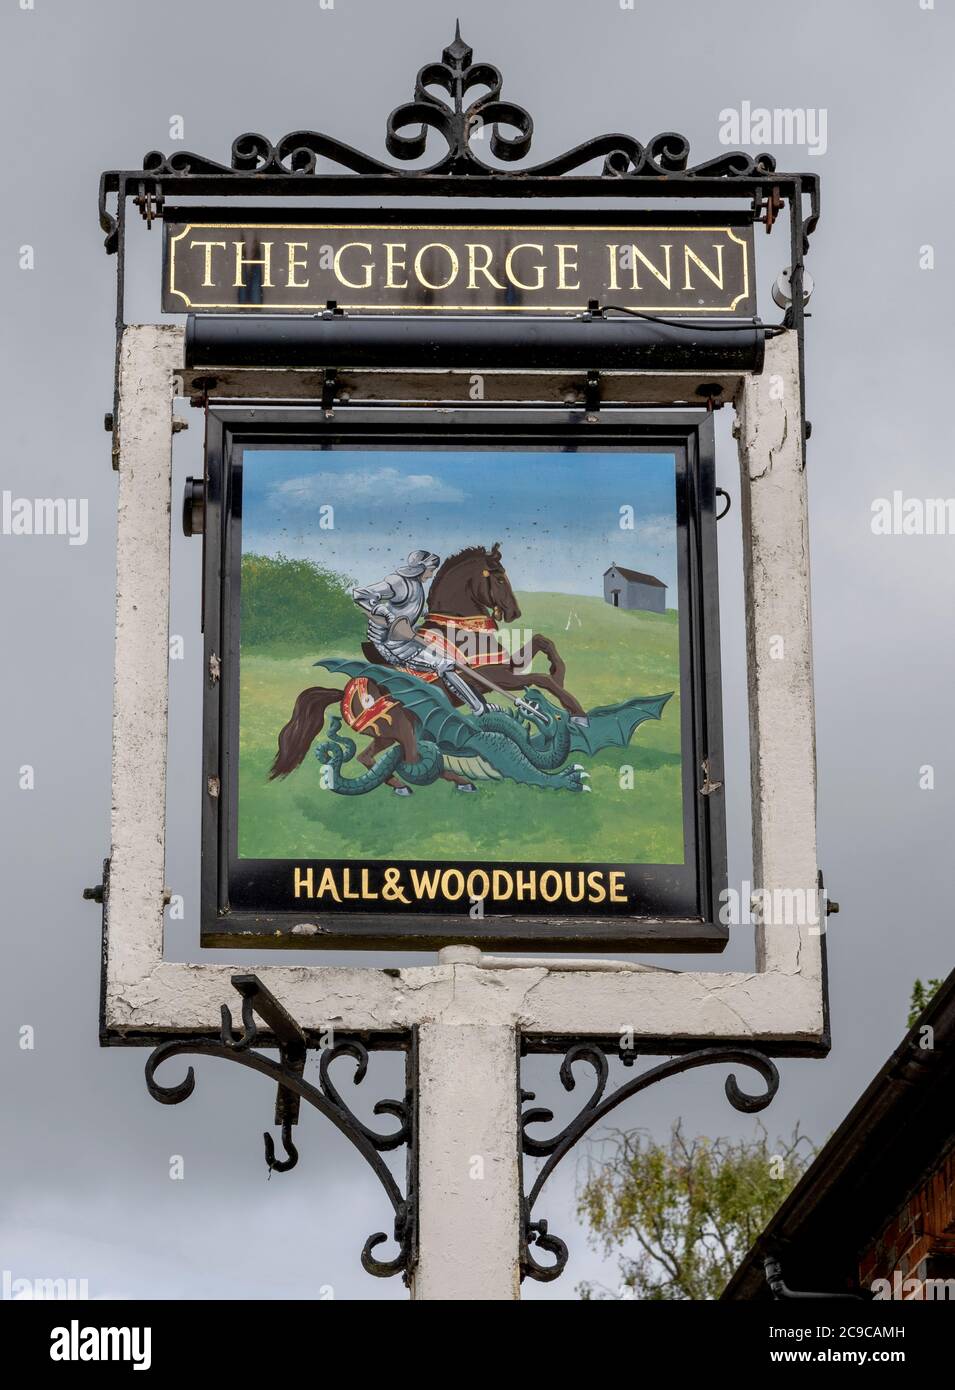 Traditionelles hängende Pub-Schild am George Inn - öffentliches Haus - St. Mary Bourne, Hampshire, England, Großbritannien Stockfoto